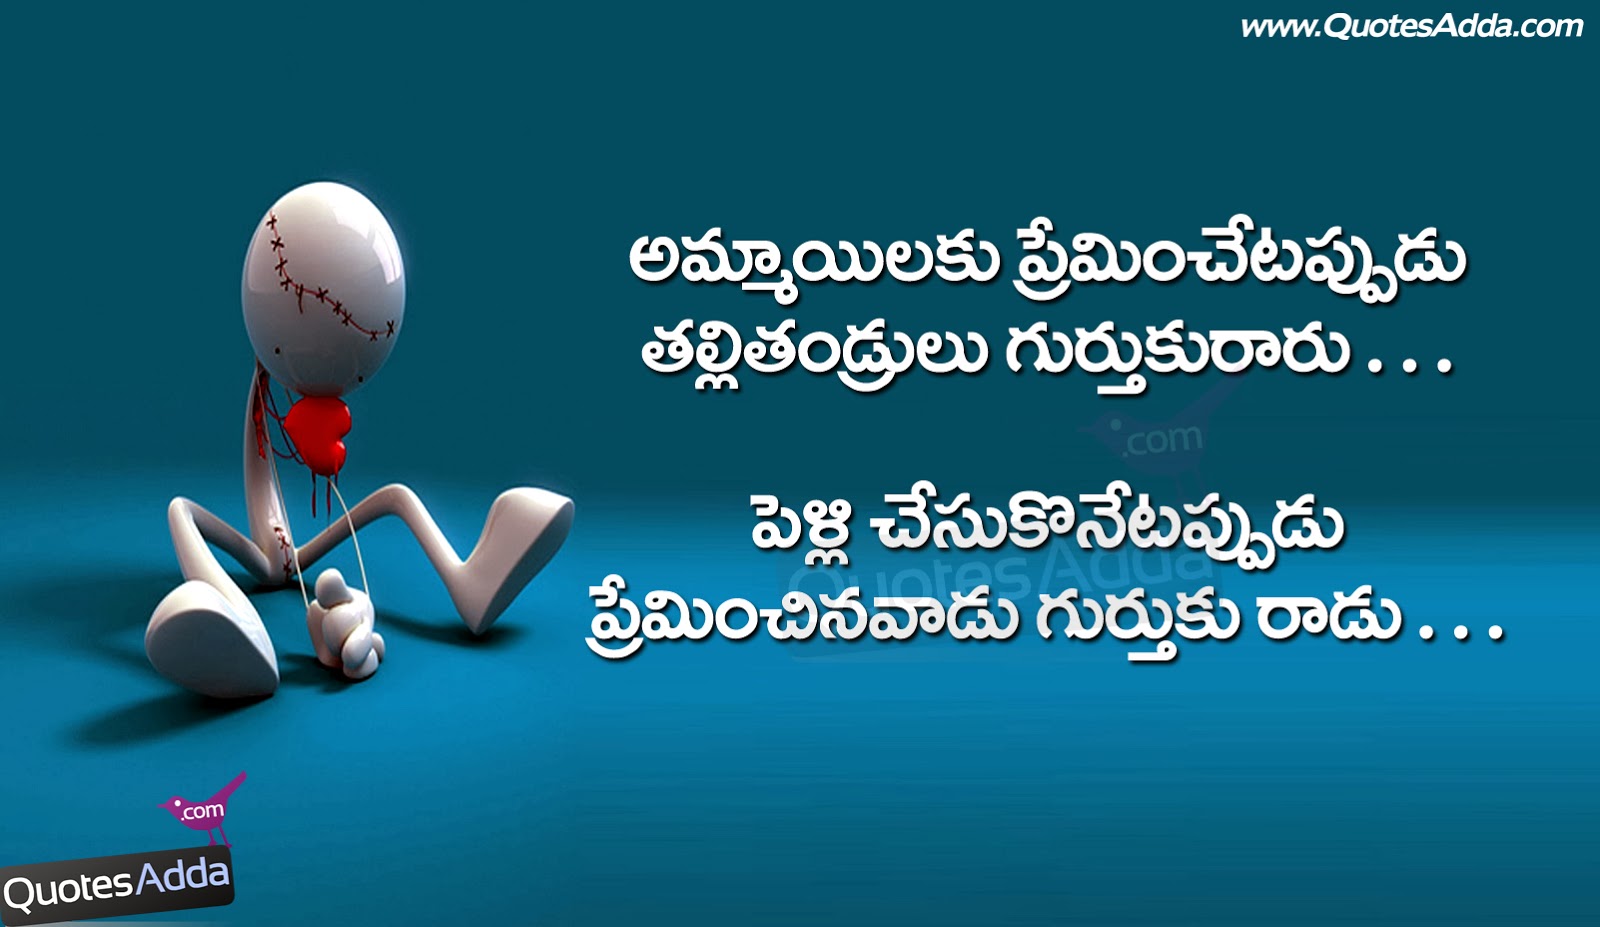 Telugu facebook funny Quotes, funny girls quotes in Telugu, telugu fun ...